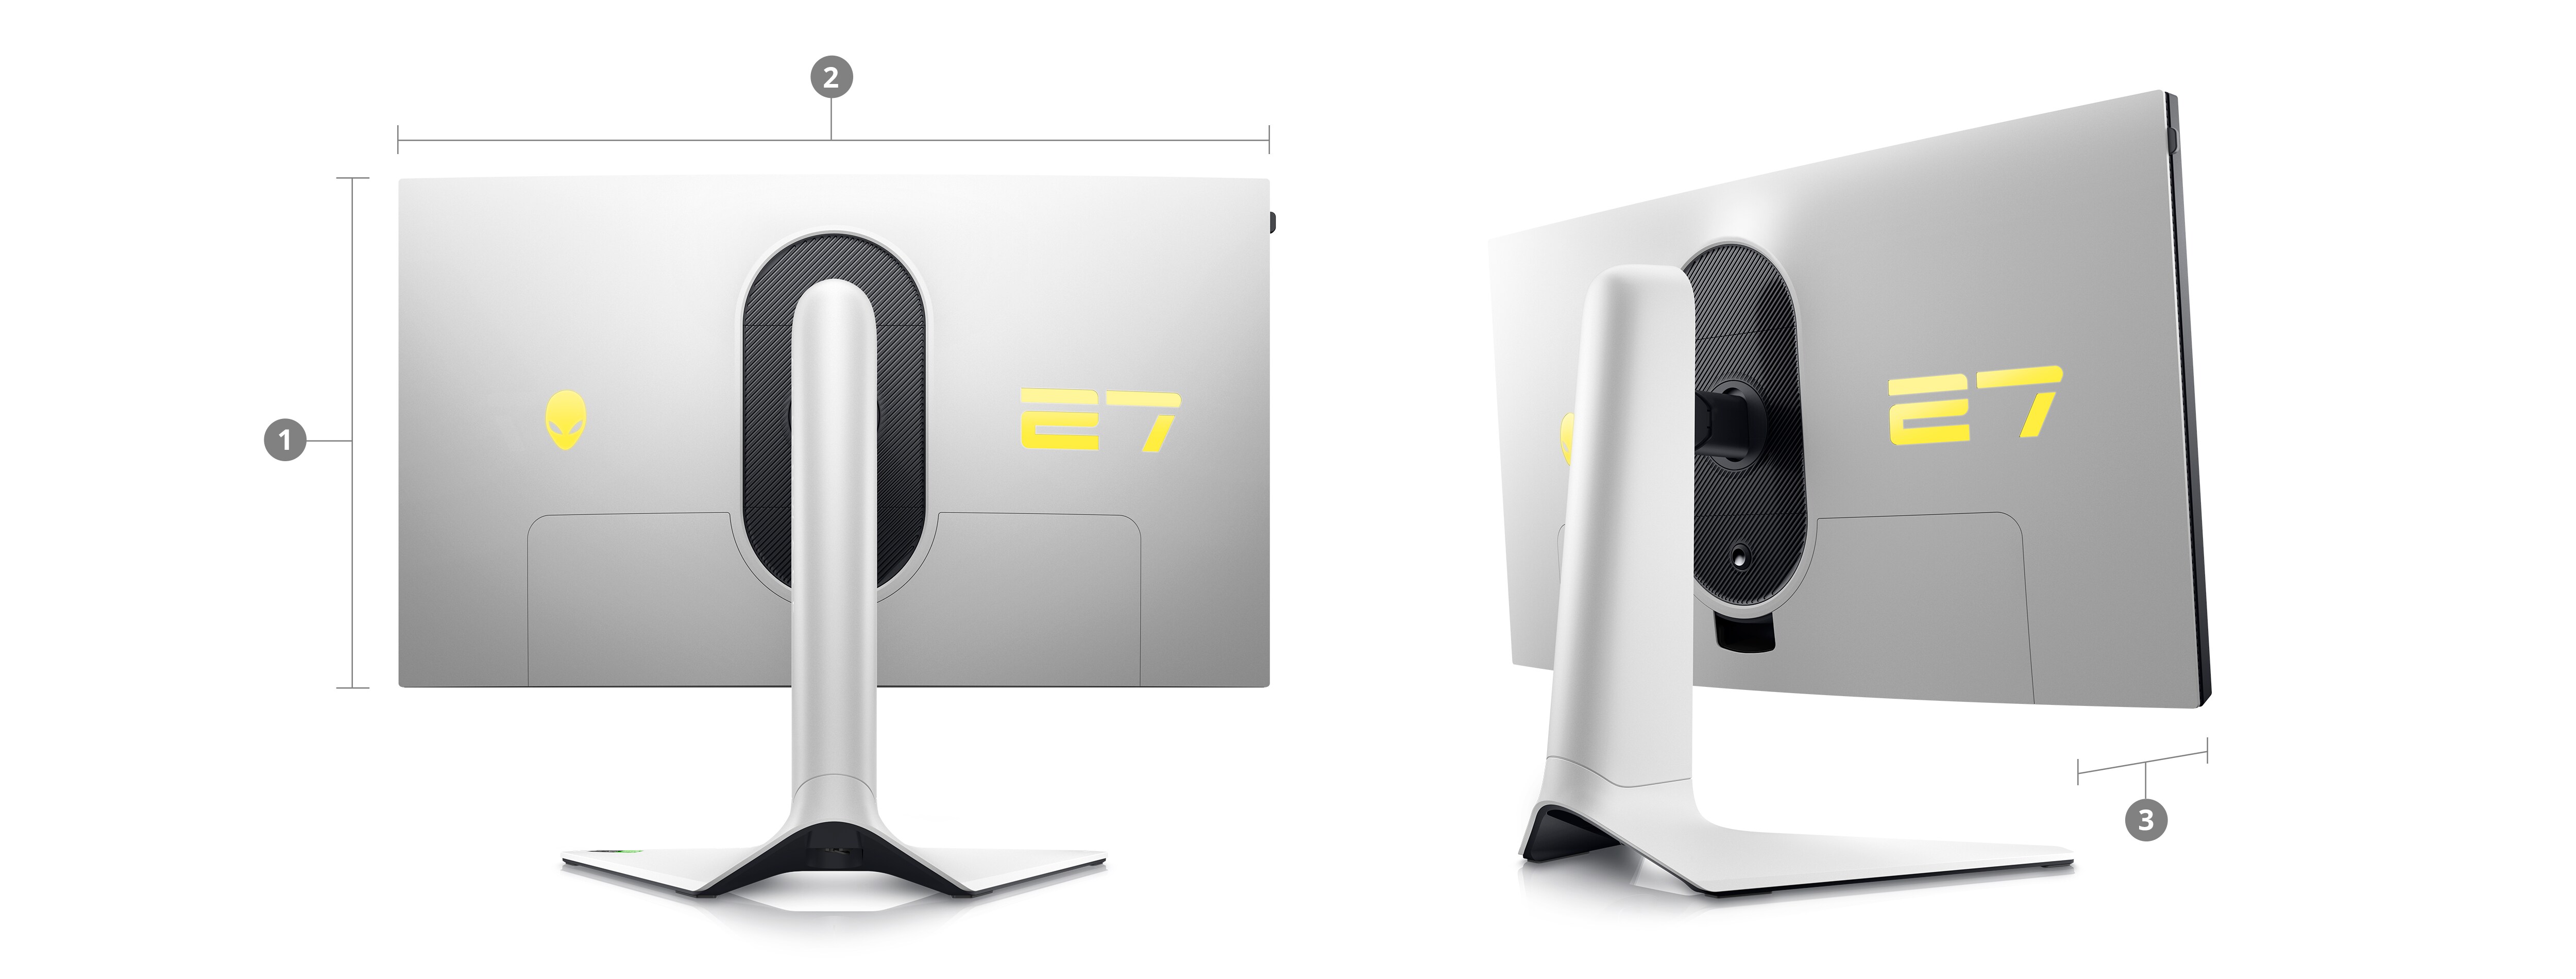 Photo de deux écrans de gaming Dell AW2723DF avec des numéros allant de 1 à 3 indiquant les dimensions et le poids du produit.